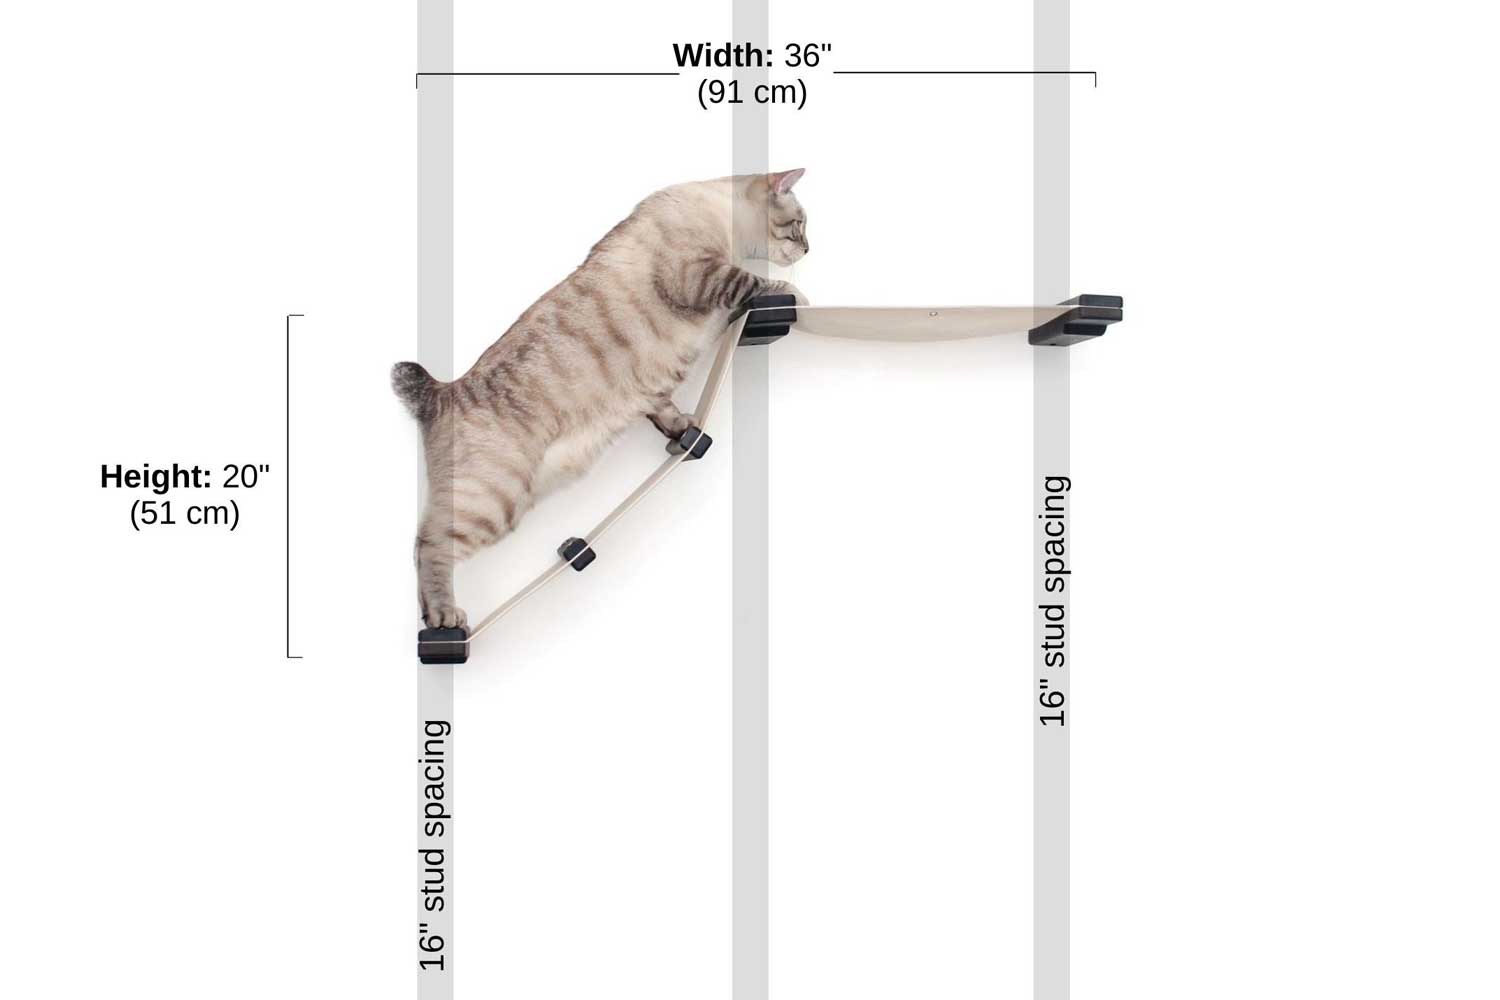 Measurements of Lift Cat Hammock